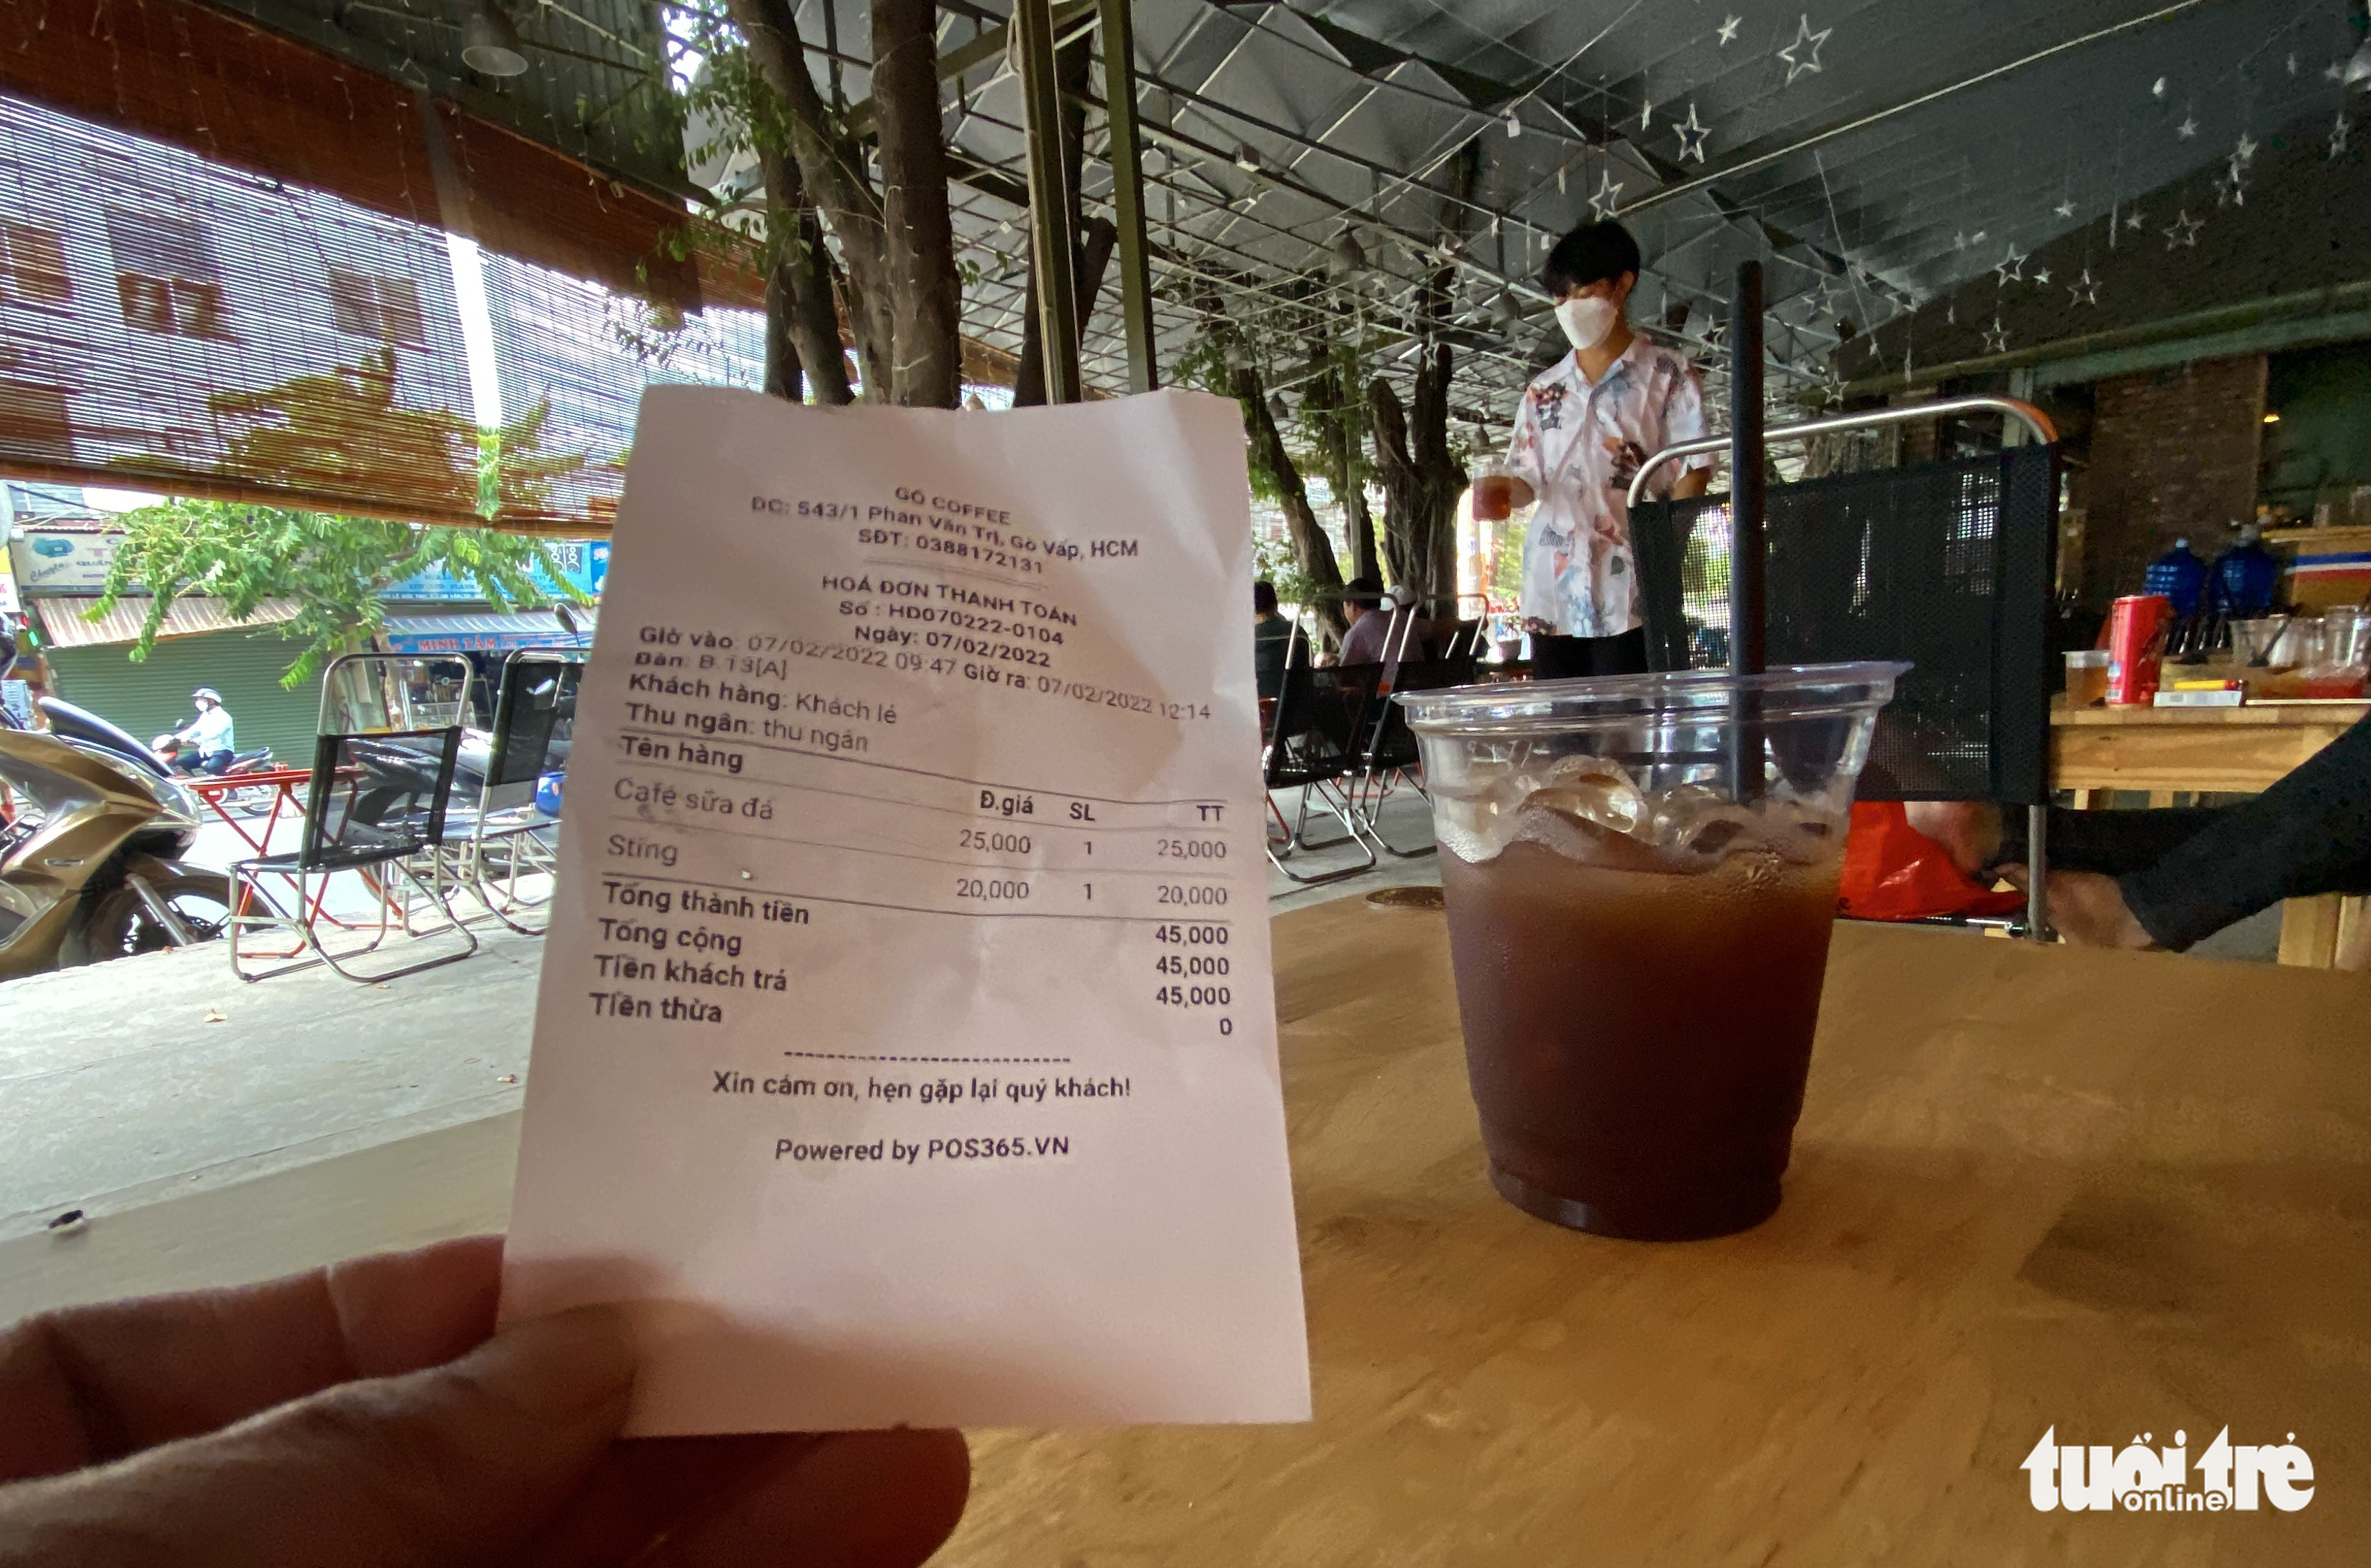 Ho Chi Minh City café under scrutiny for mistaken 100% VAT charge